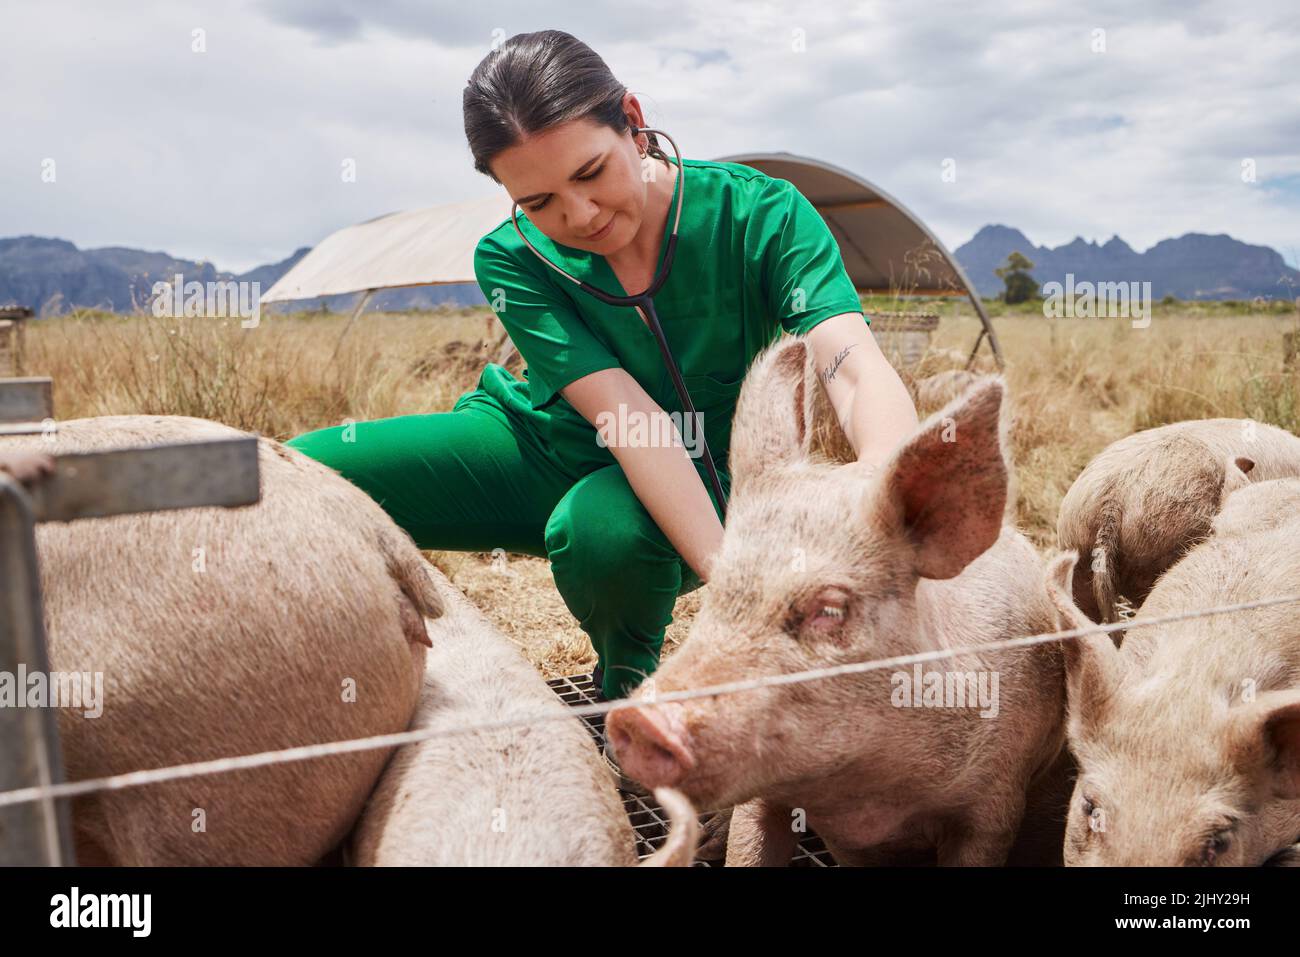 Die Prävention von Krankheiten ist genauso wichtig wie die Behandlung. Eine Tierärztin auf einem Bauernhof mit Schweinen. Stockfoto